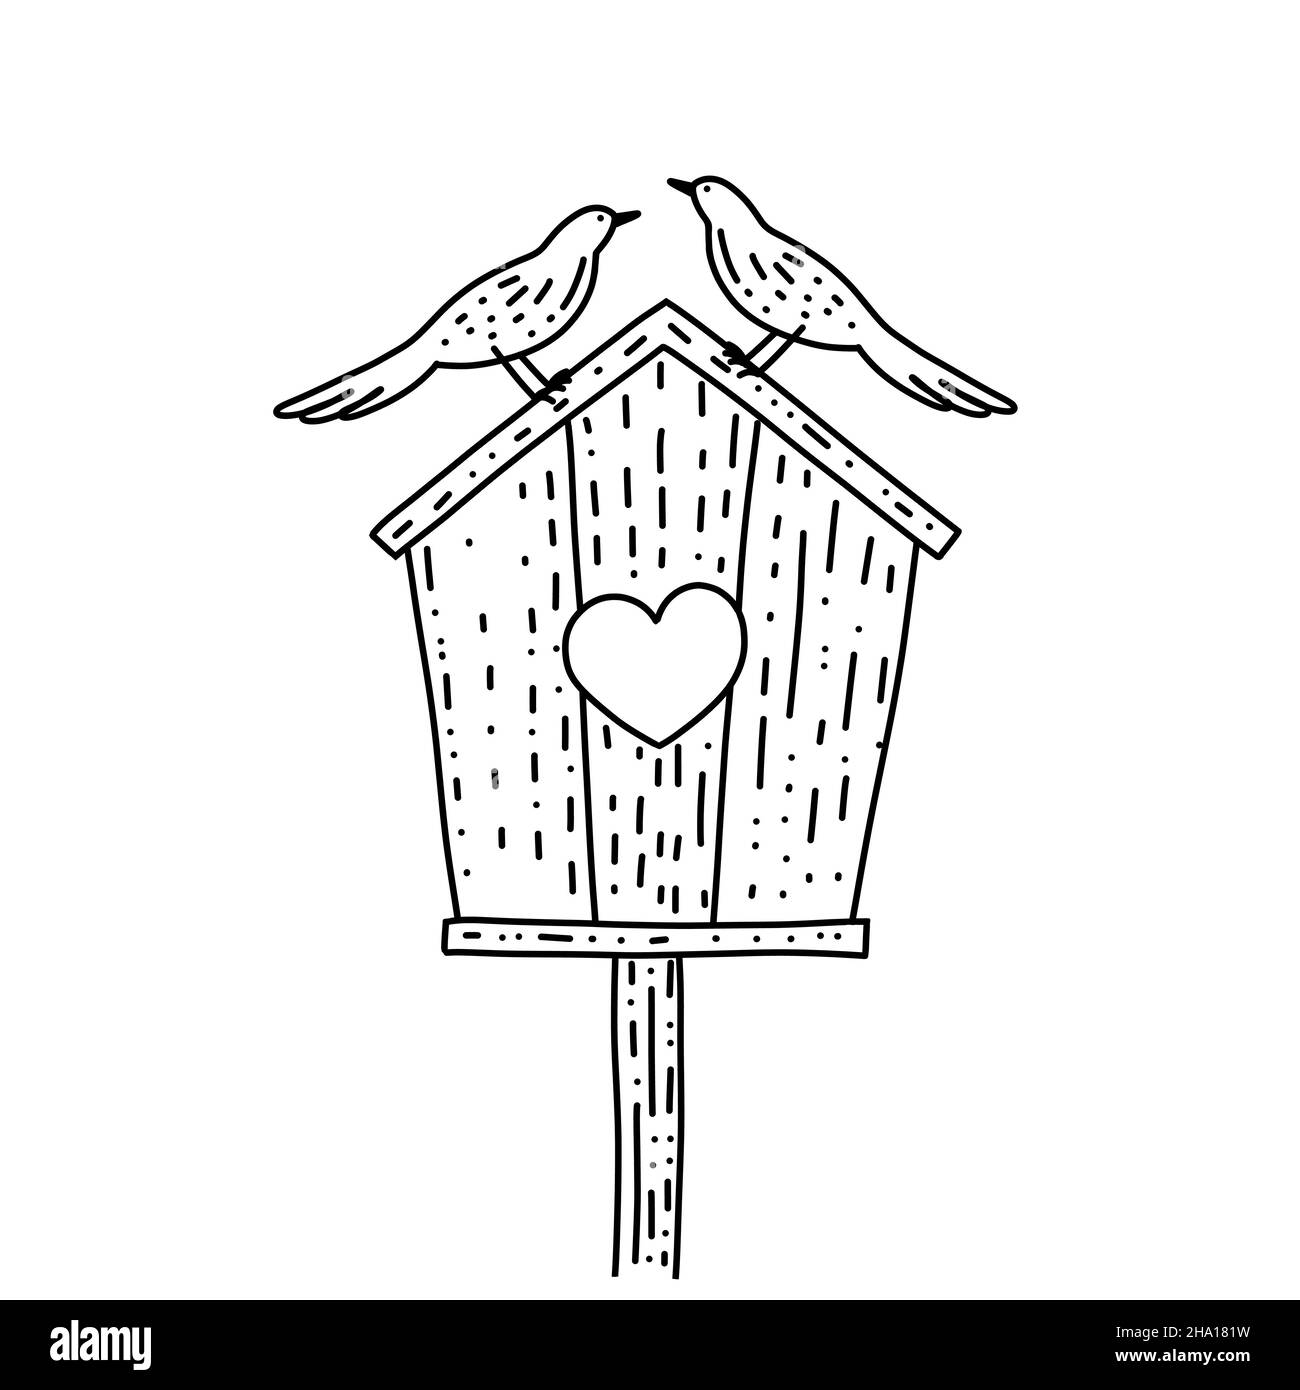 Vogelhaus aus Holz auf einem Stock mit zwei Vögeln. Vektorgrafik im Doodle-Stil. Valentibe und Hochzeit Konzept isoliert Vektor-Illustration auf einem Stock Vektor